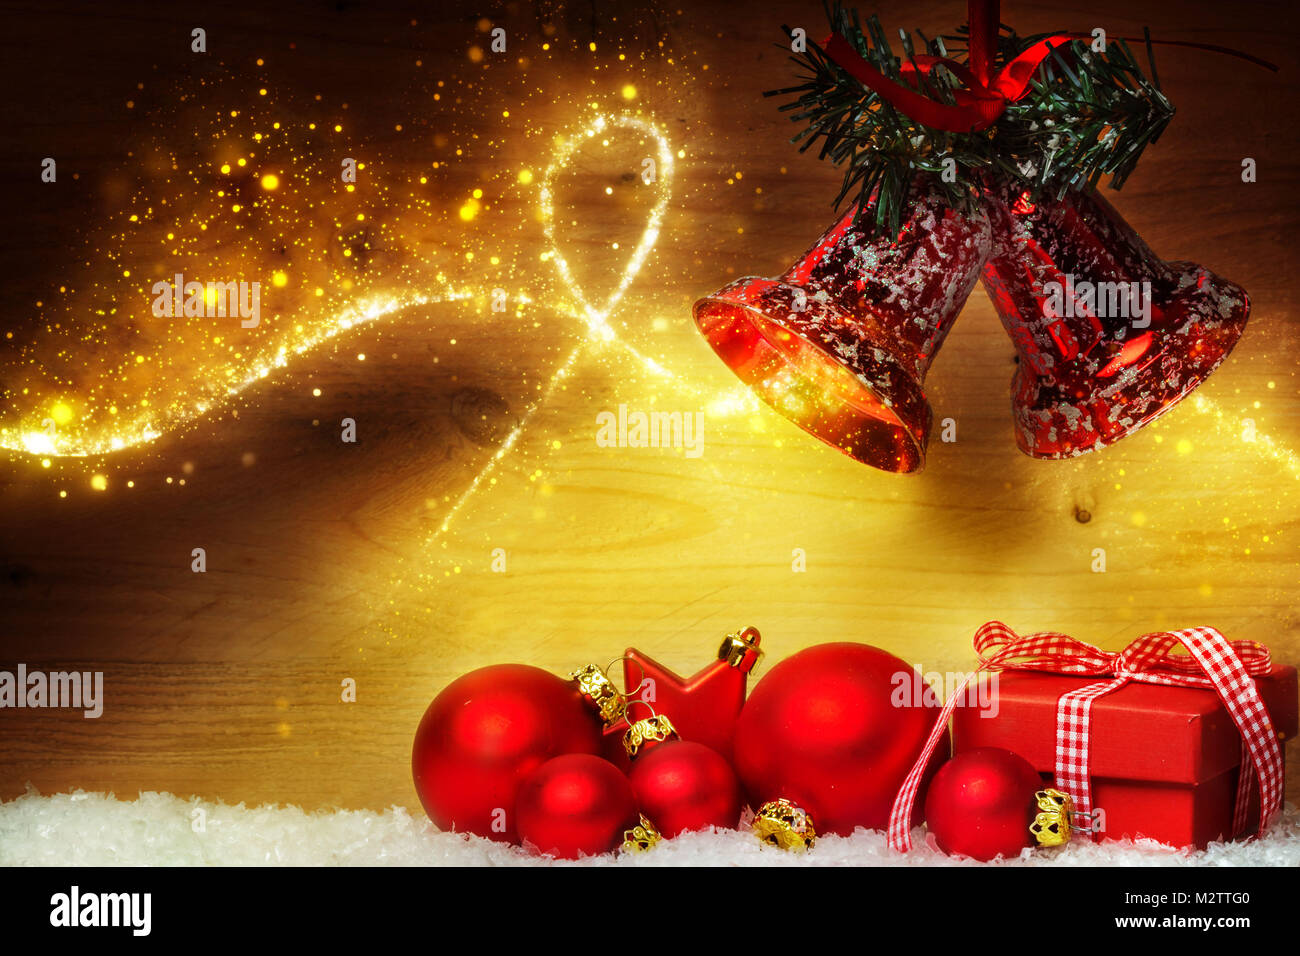 Foto Di Natale Con Auguri.Biglietto Di Auguri Di Natale Decorazione Di Natale Con Le Palle E Le Campane Foto Stock Alamy